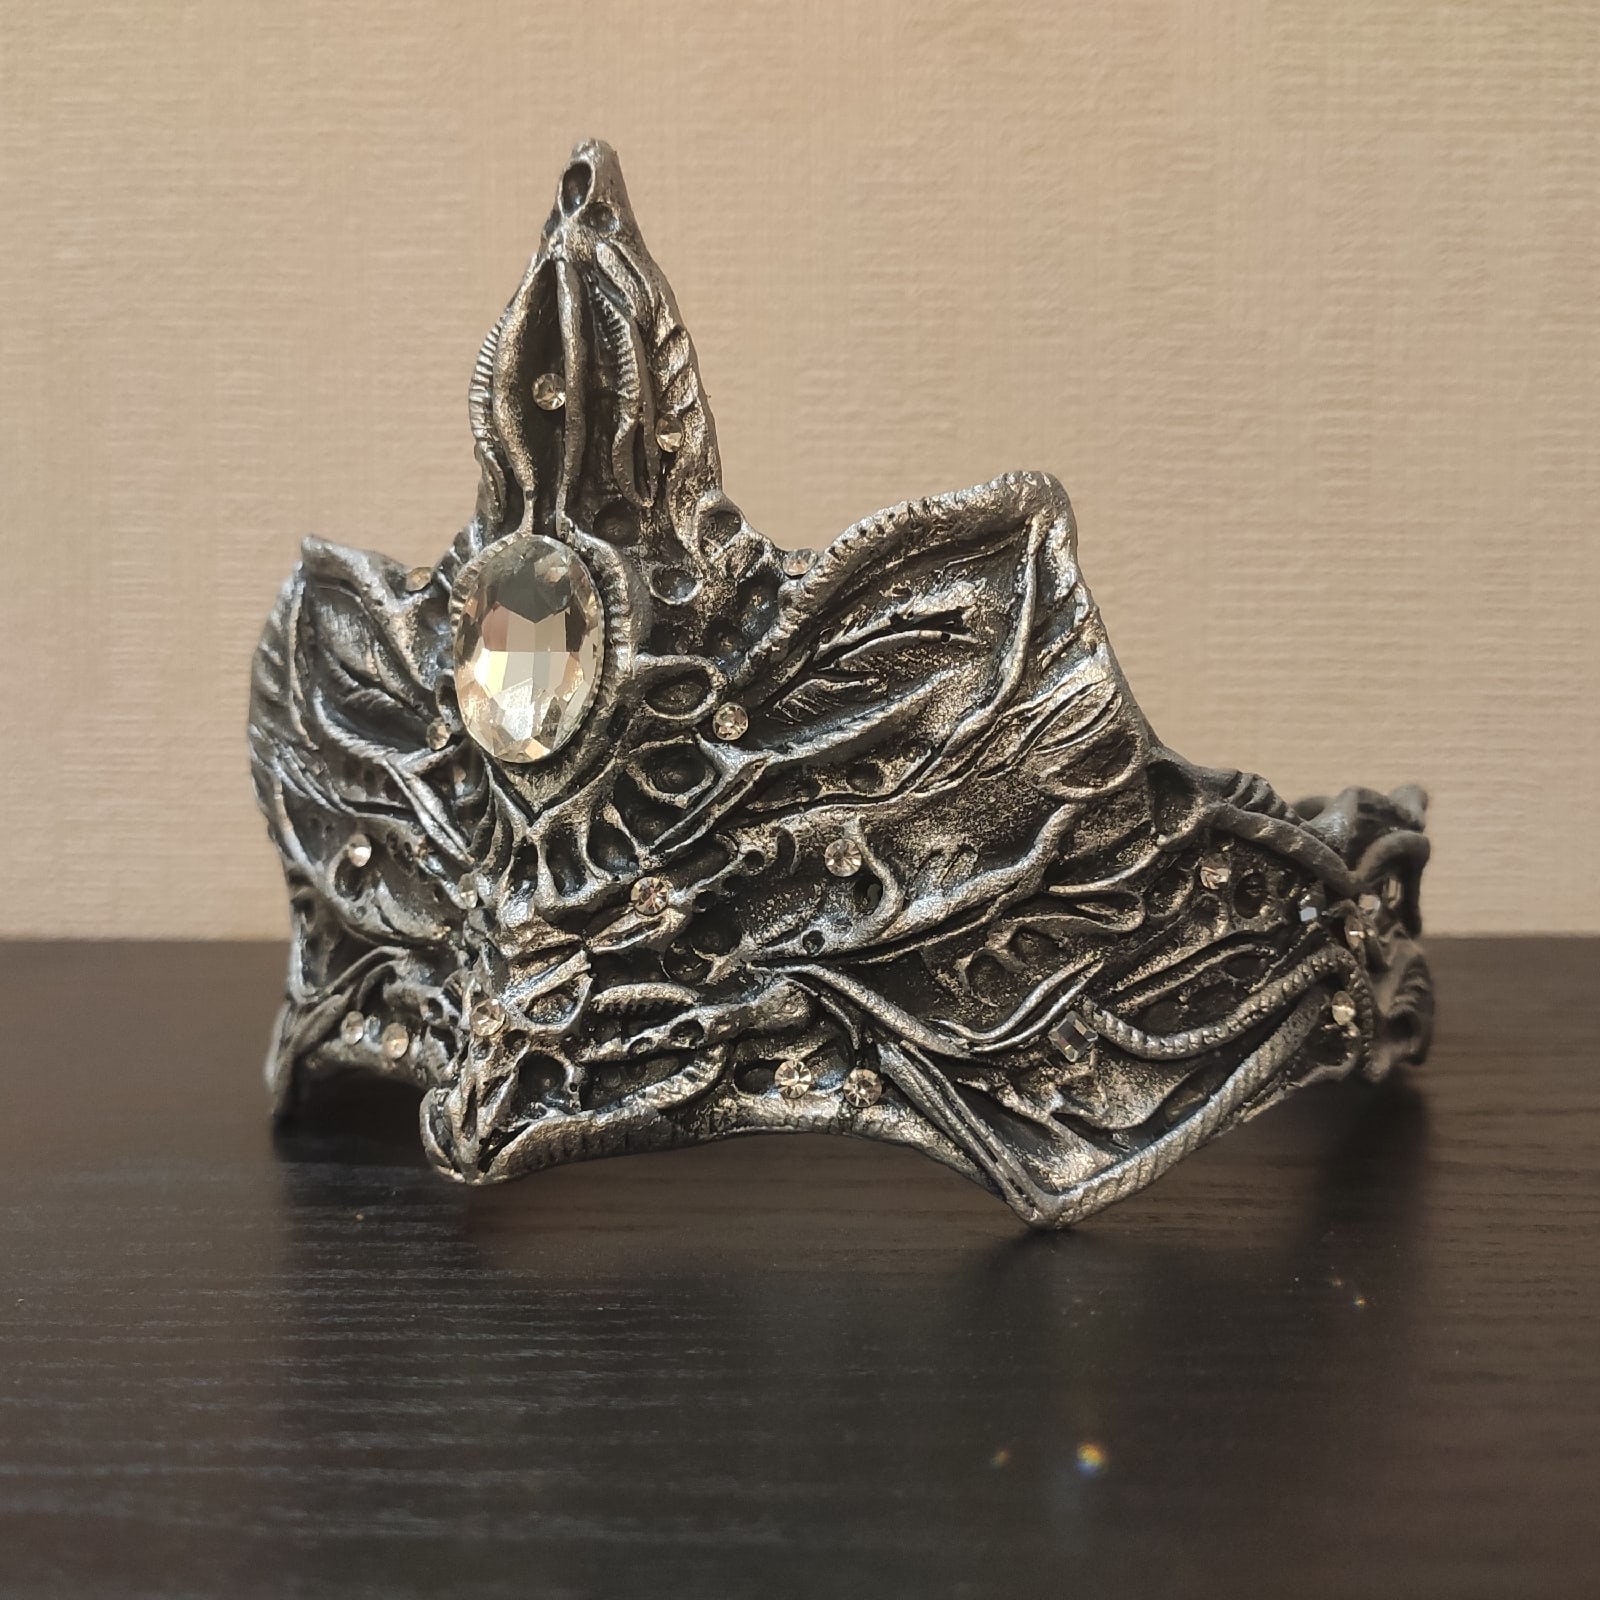 Firekeeper crown inspired by Dark Souls 3 video game | Etsy